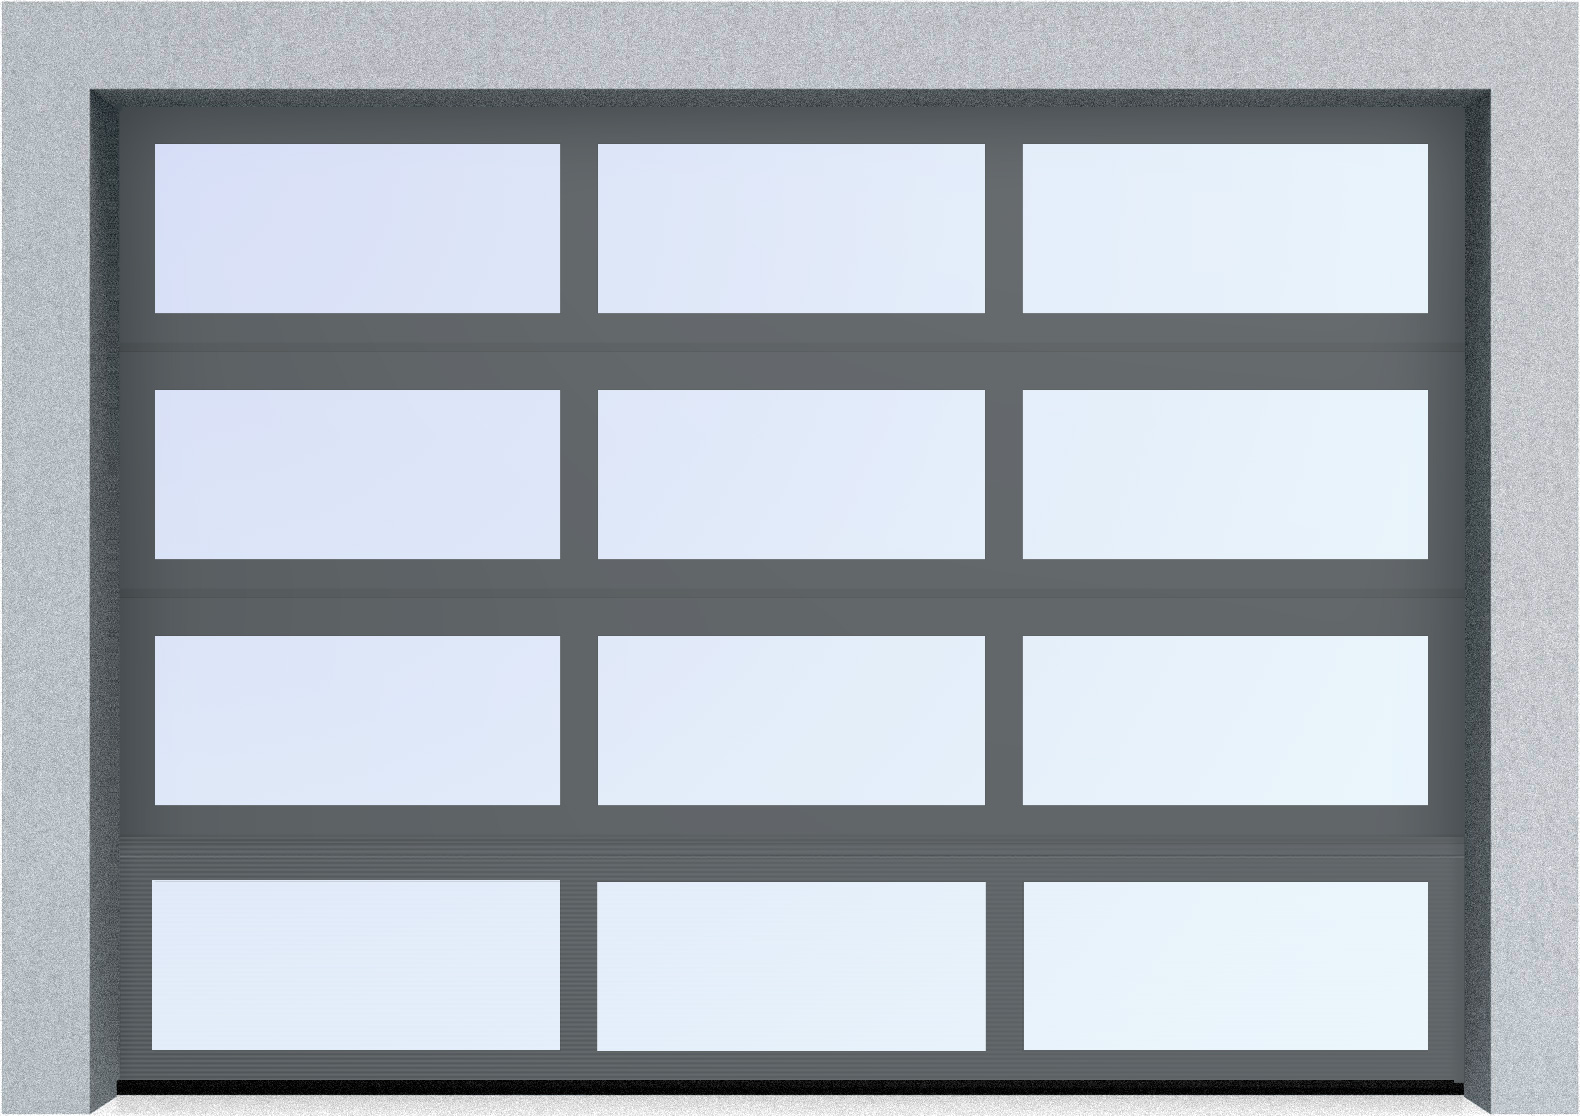  Секционные панорамные ворота серии AluTrend (АЛП) 2250х2375 нижняя панель стандартные цвета, фото 5 